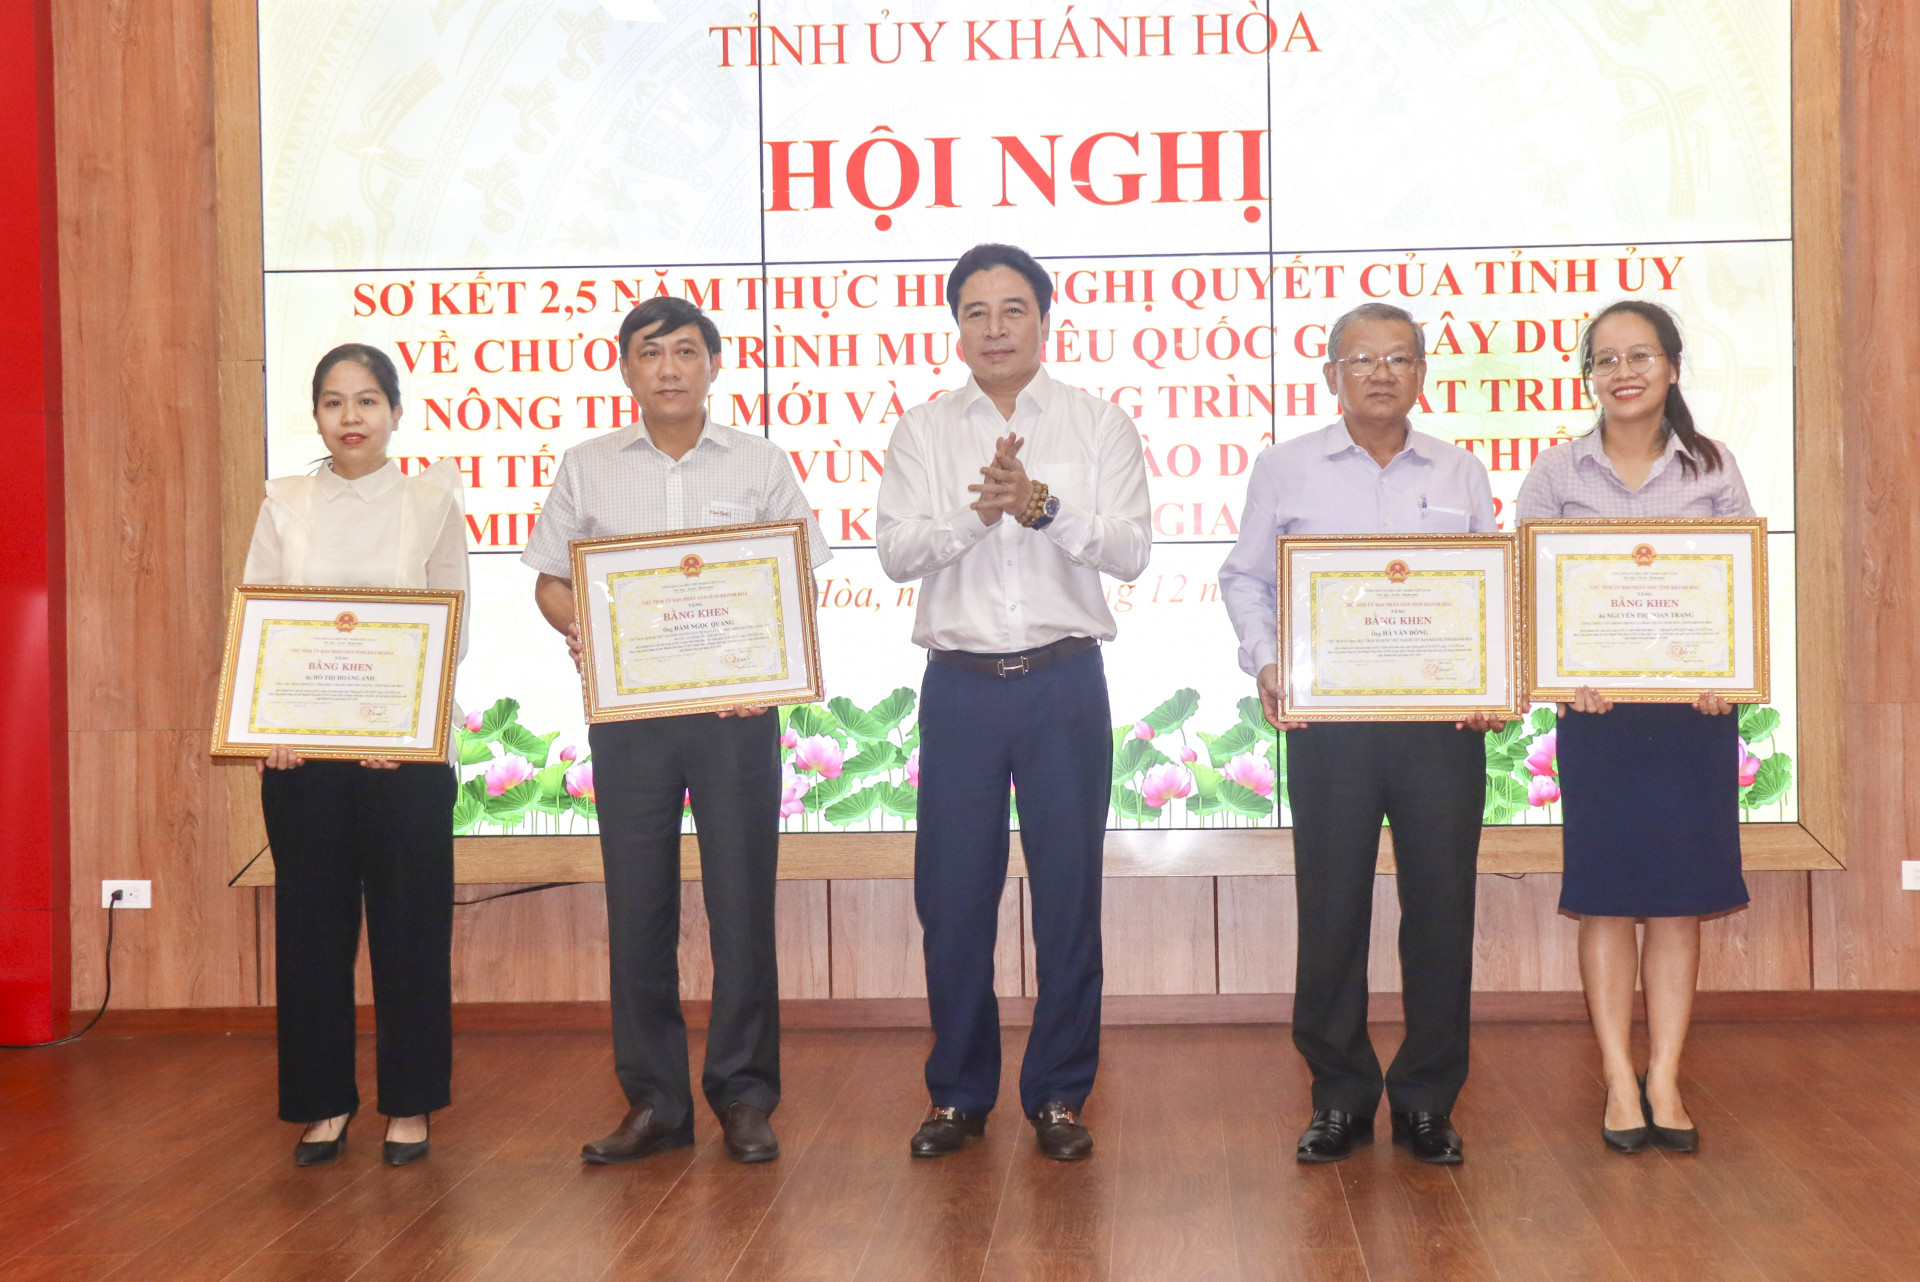 Đồng chí Nguyễn Khắc Toàn trao bằng khen của UBND tỉnh cho các cá nhân đạt thành tích xuất sắc trong thực hiện Nghị quyết số 08.
